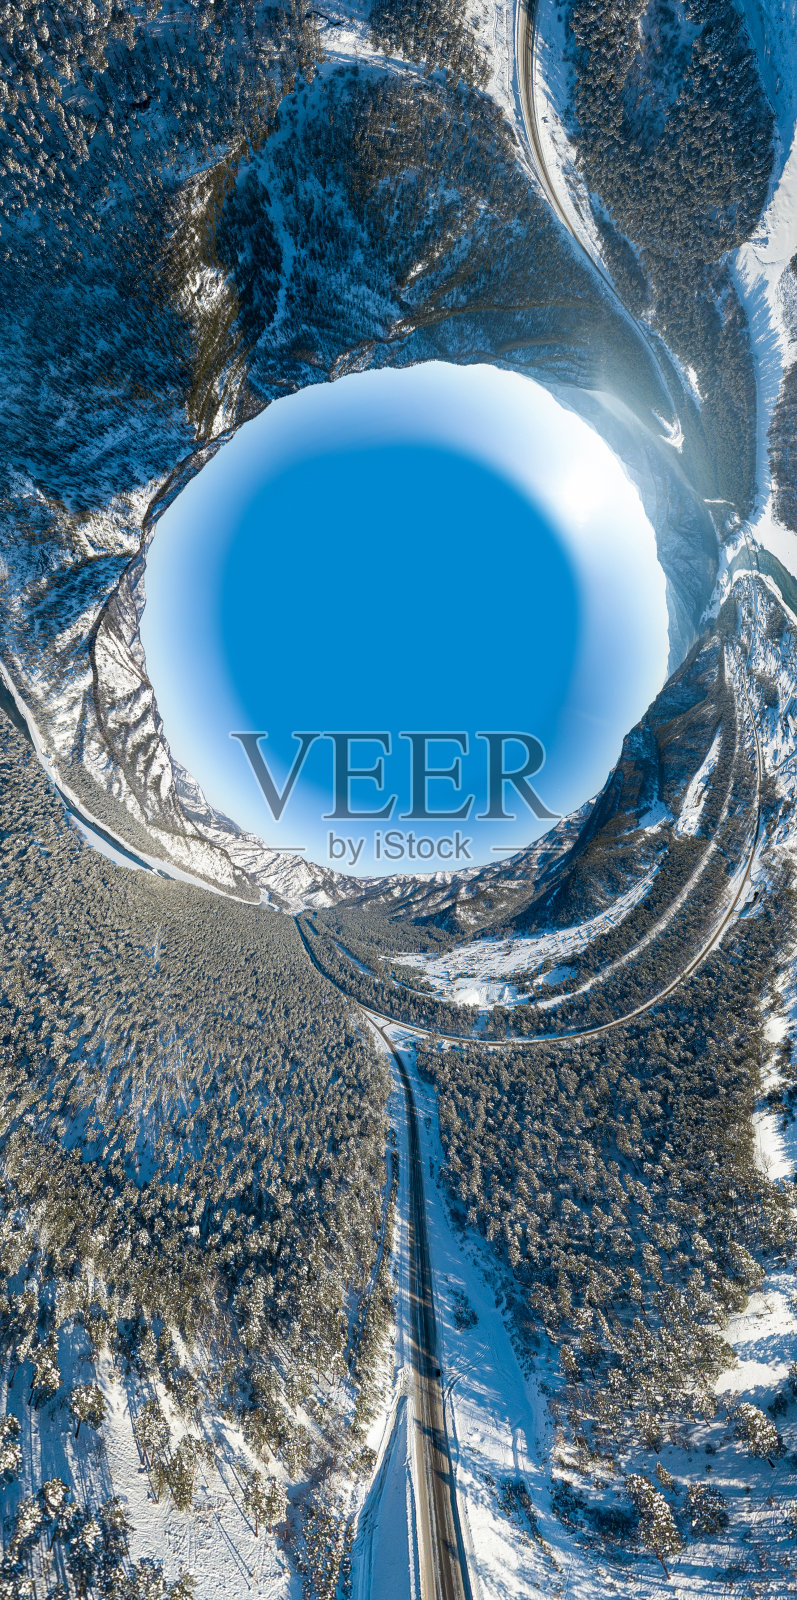 360度全景无人机拍摄的抽象的冰雪世界，自然和风景如画的冬季景观附近的阿尔泰山脉与绿色的河流，蓝天和桥梁照片摄影图片